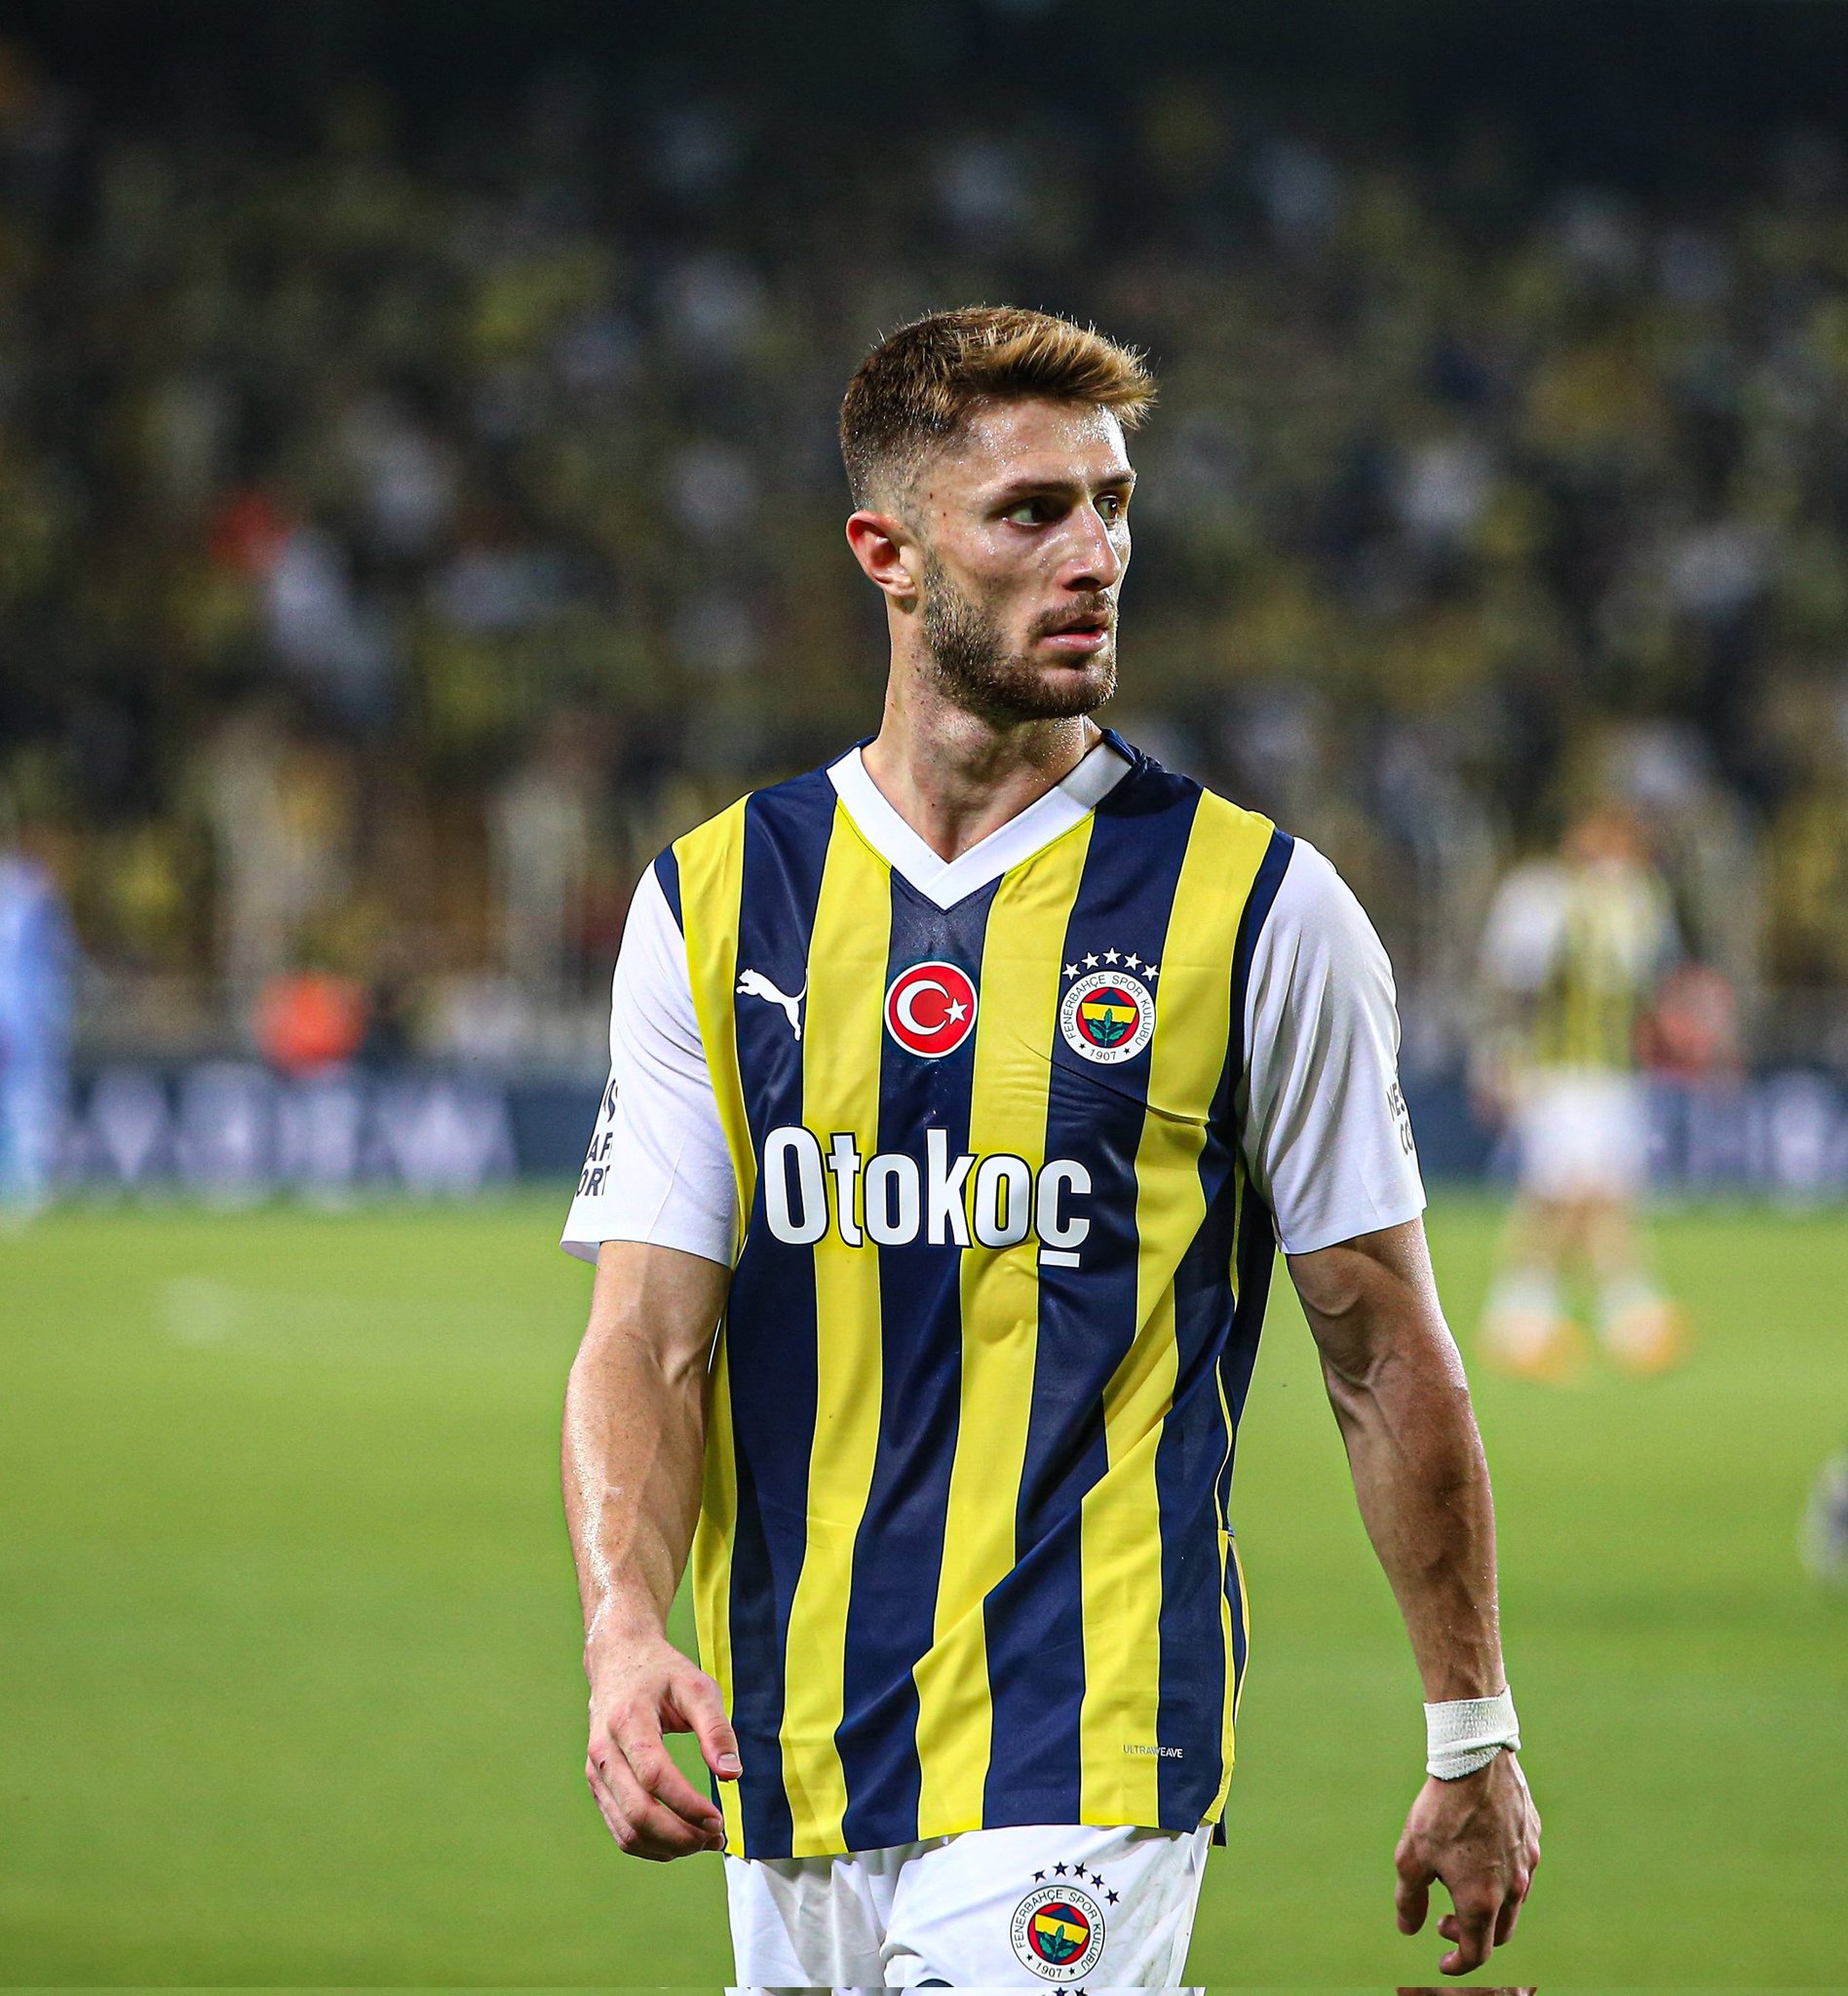 Fenerbahçe vs Zenit: A Clash of Titans